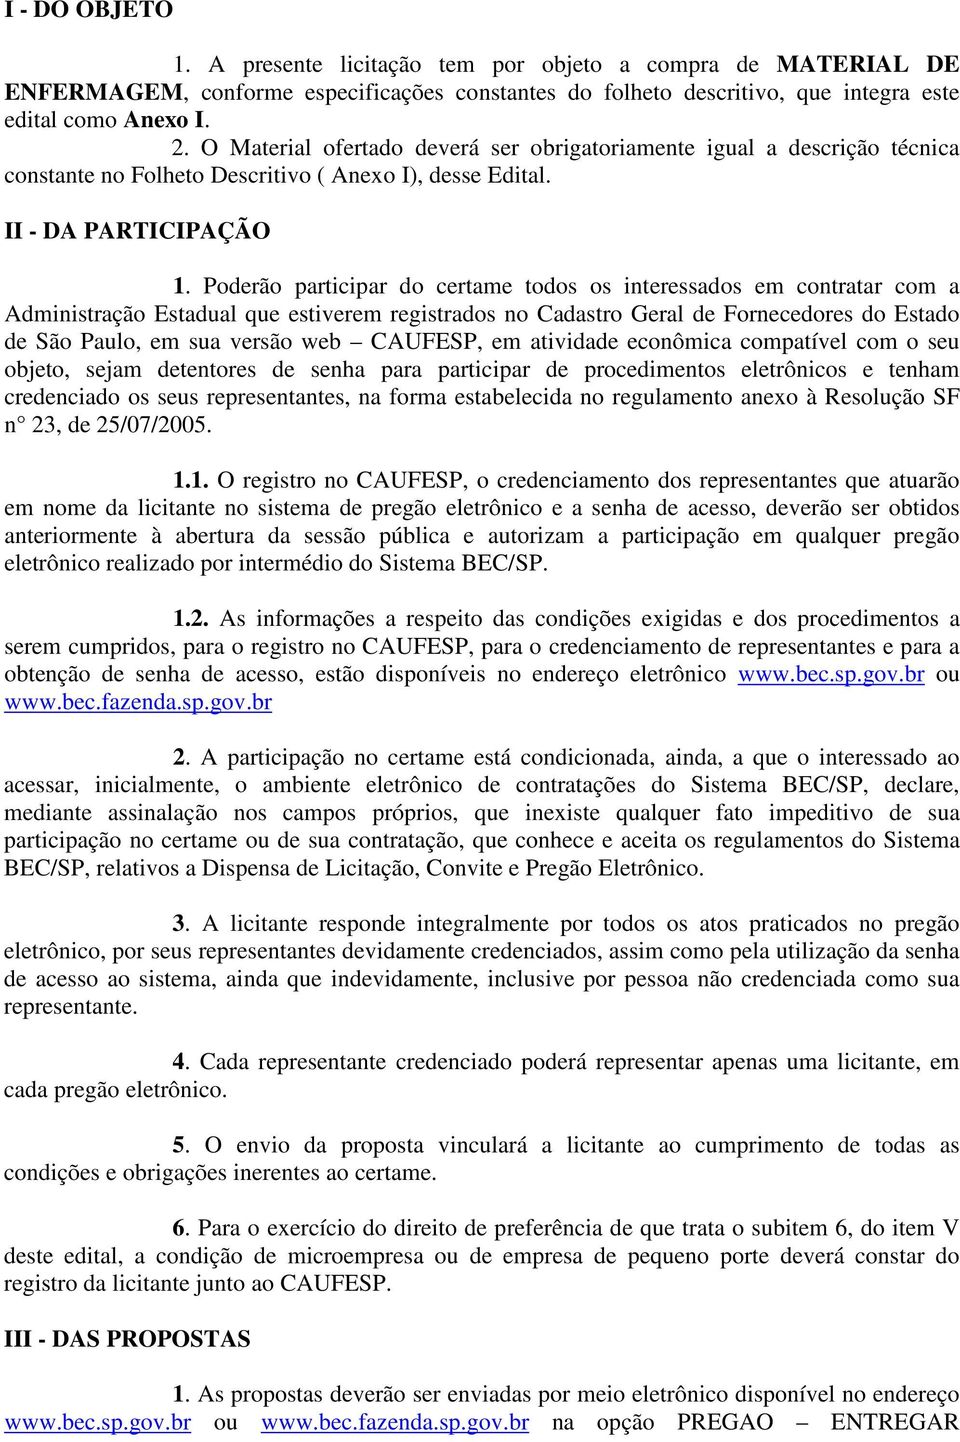 Poderão participar do certame todos os interessados em contratar com a Administração Estadual que estiverem registrados no Cadastro Geral de Fornecedores do Estado de São Paulo, em sua versão web